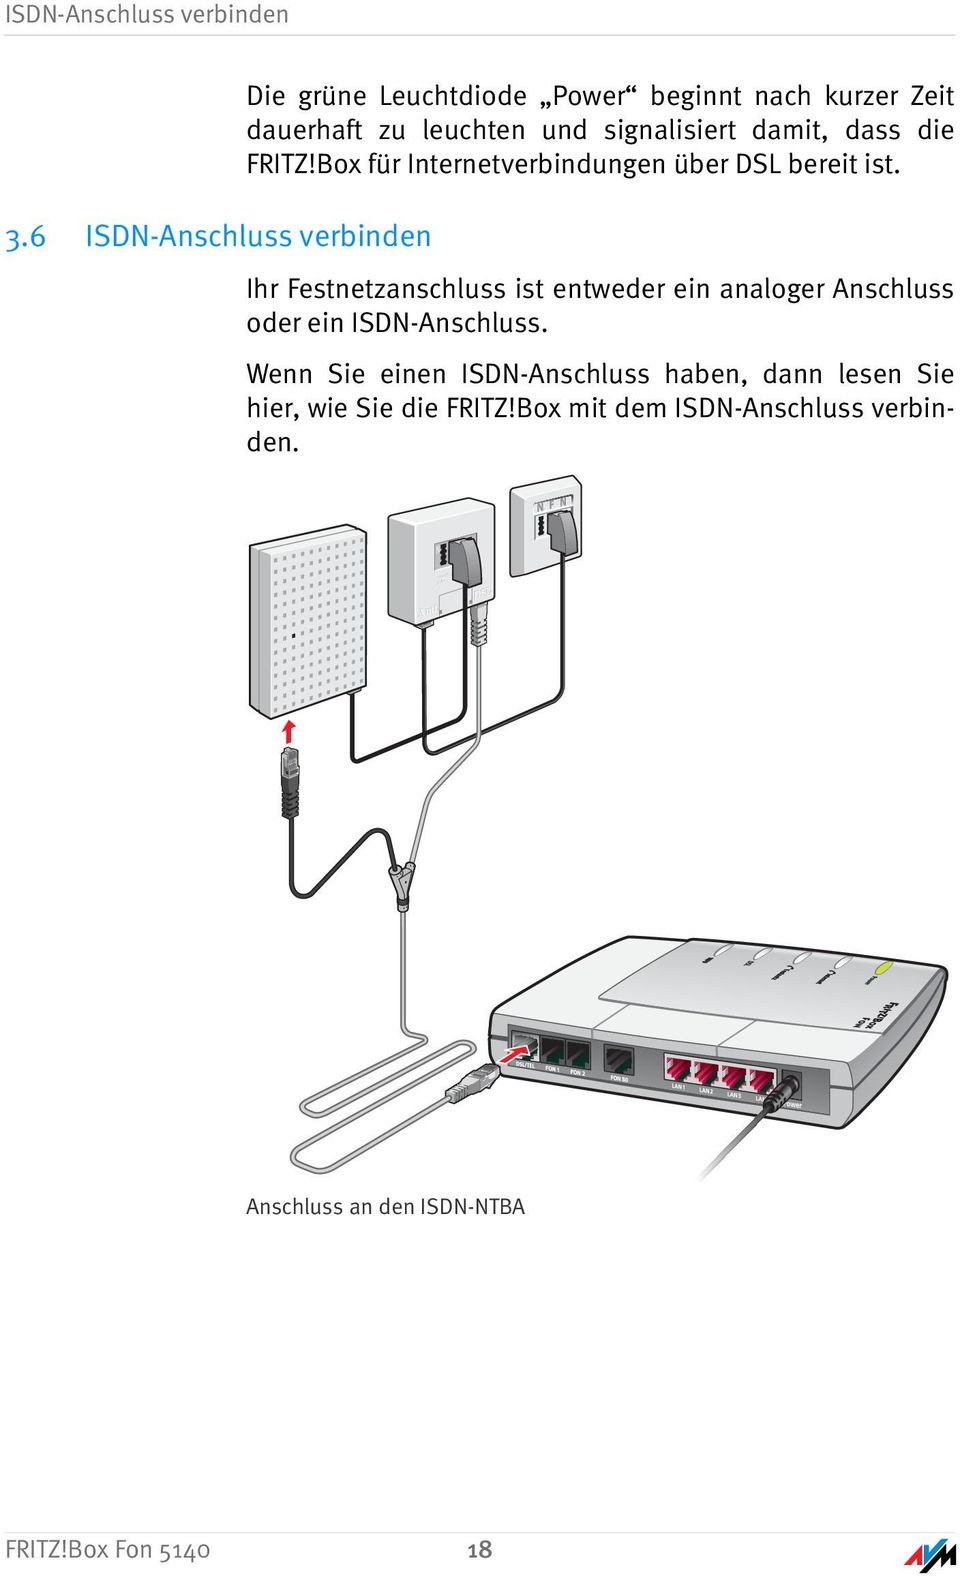 signalisiert damit, dass die FRITZ!Box für Internetverbindungen über DSL bereit ist.